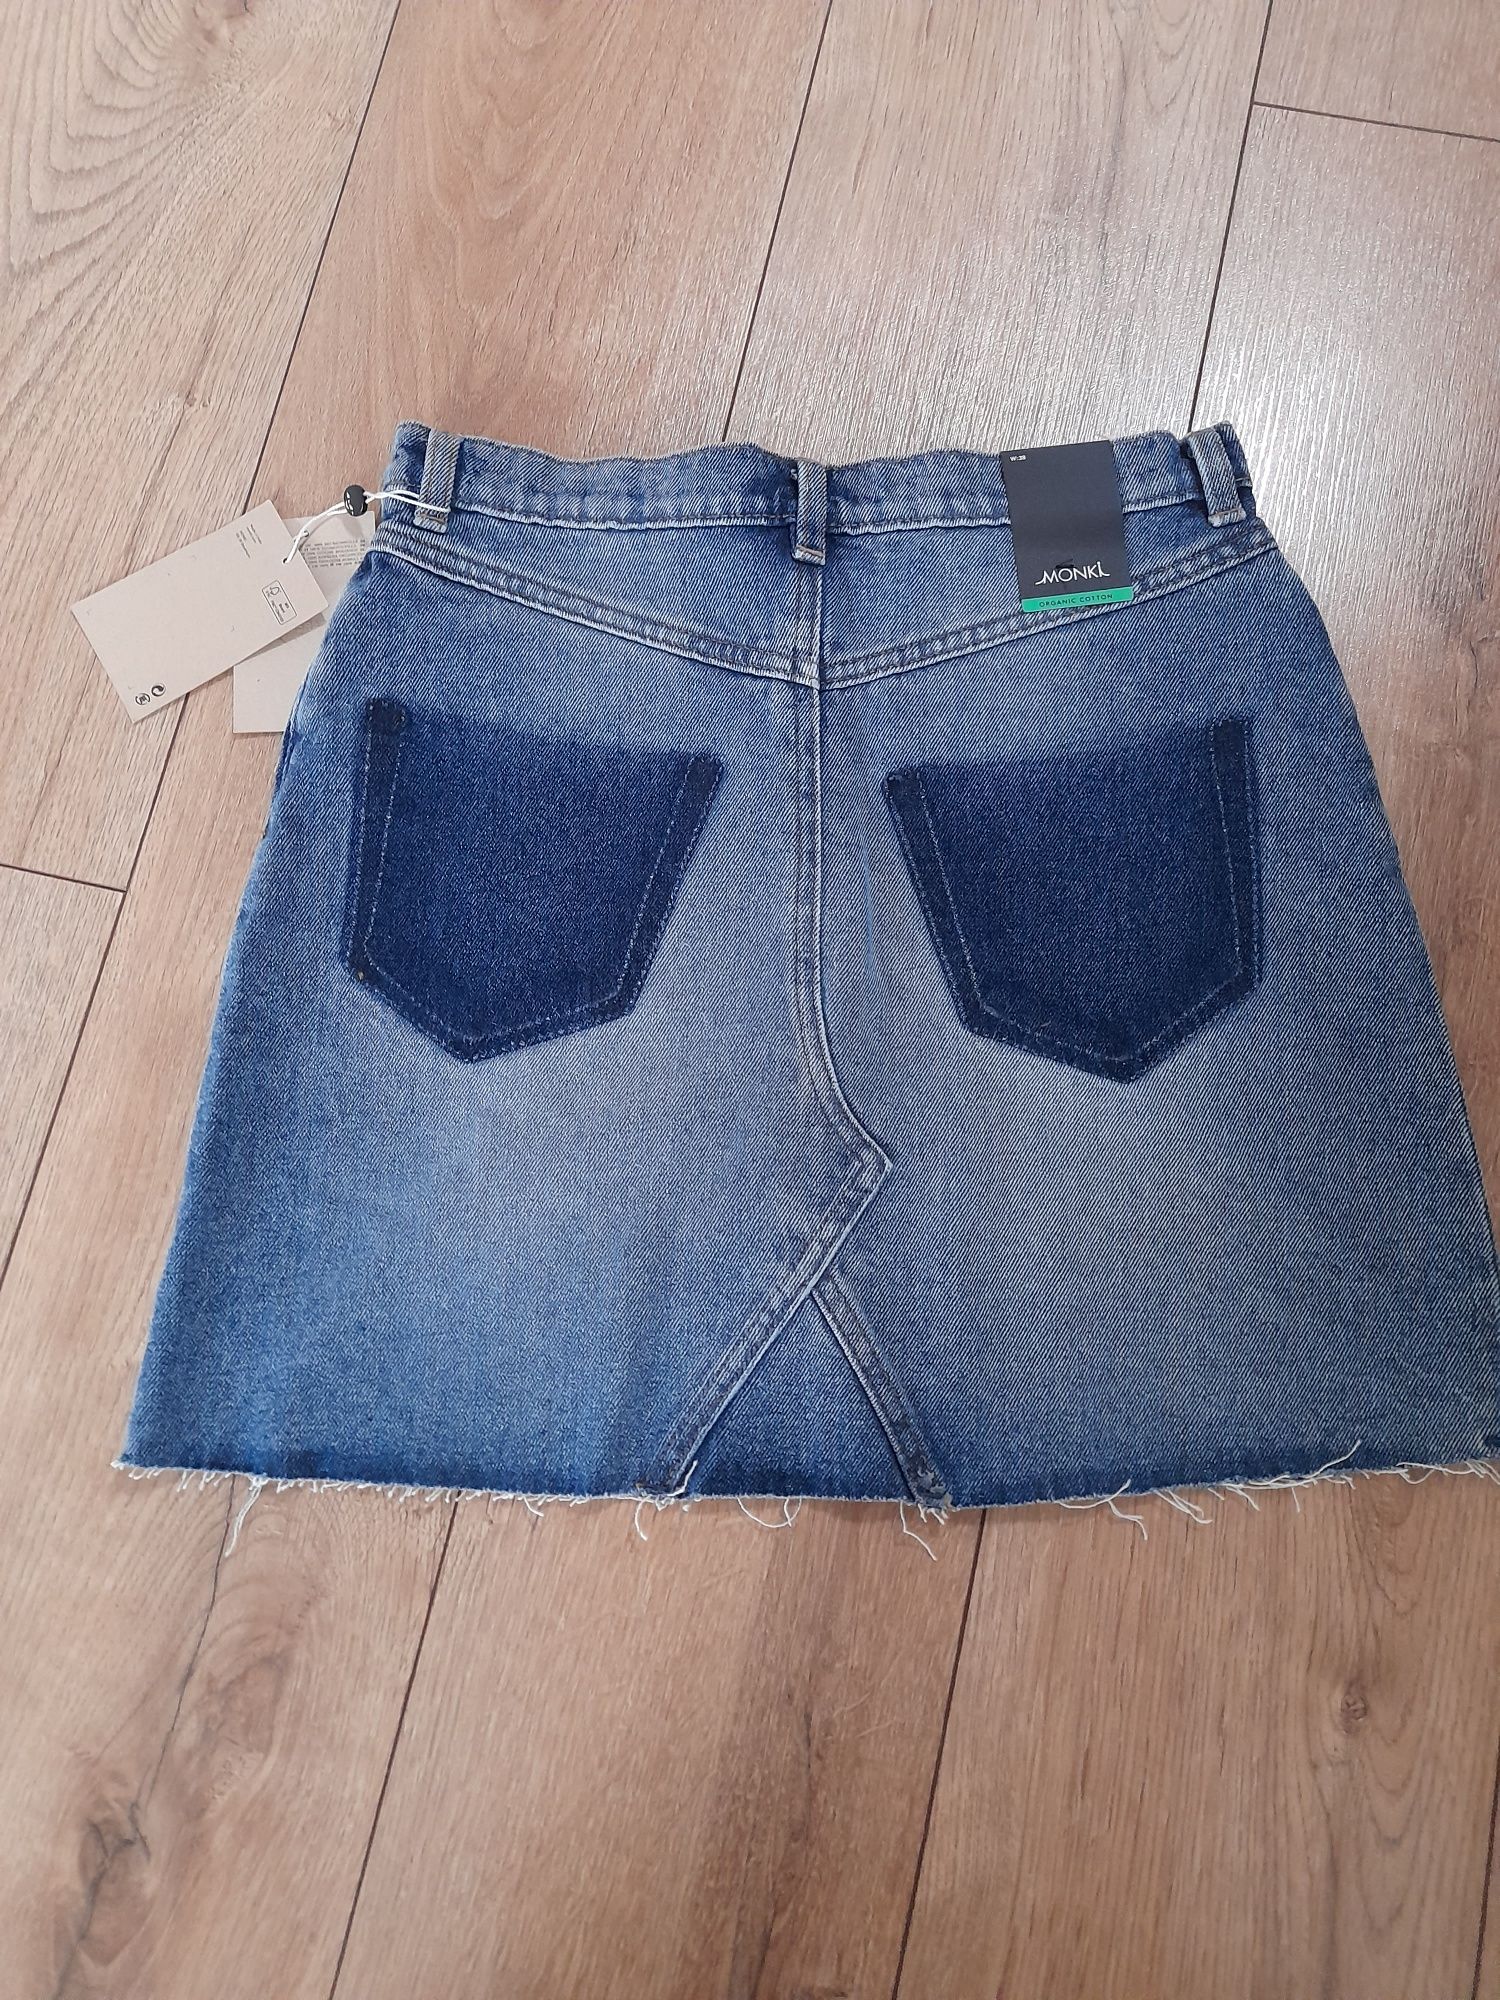 Nowa jeansowa spódnica niebieska monki M 38